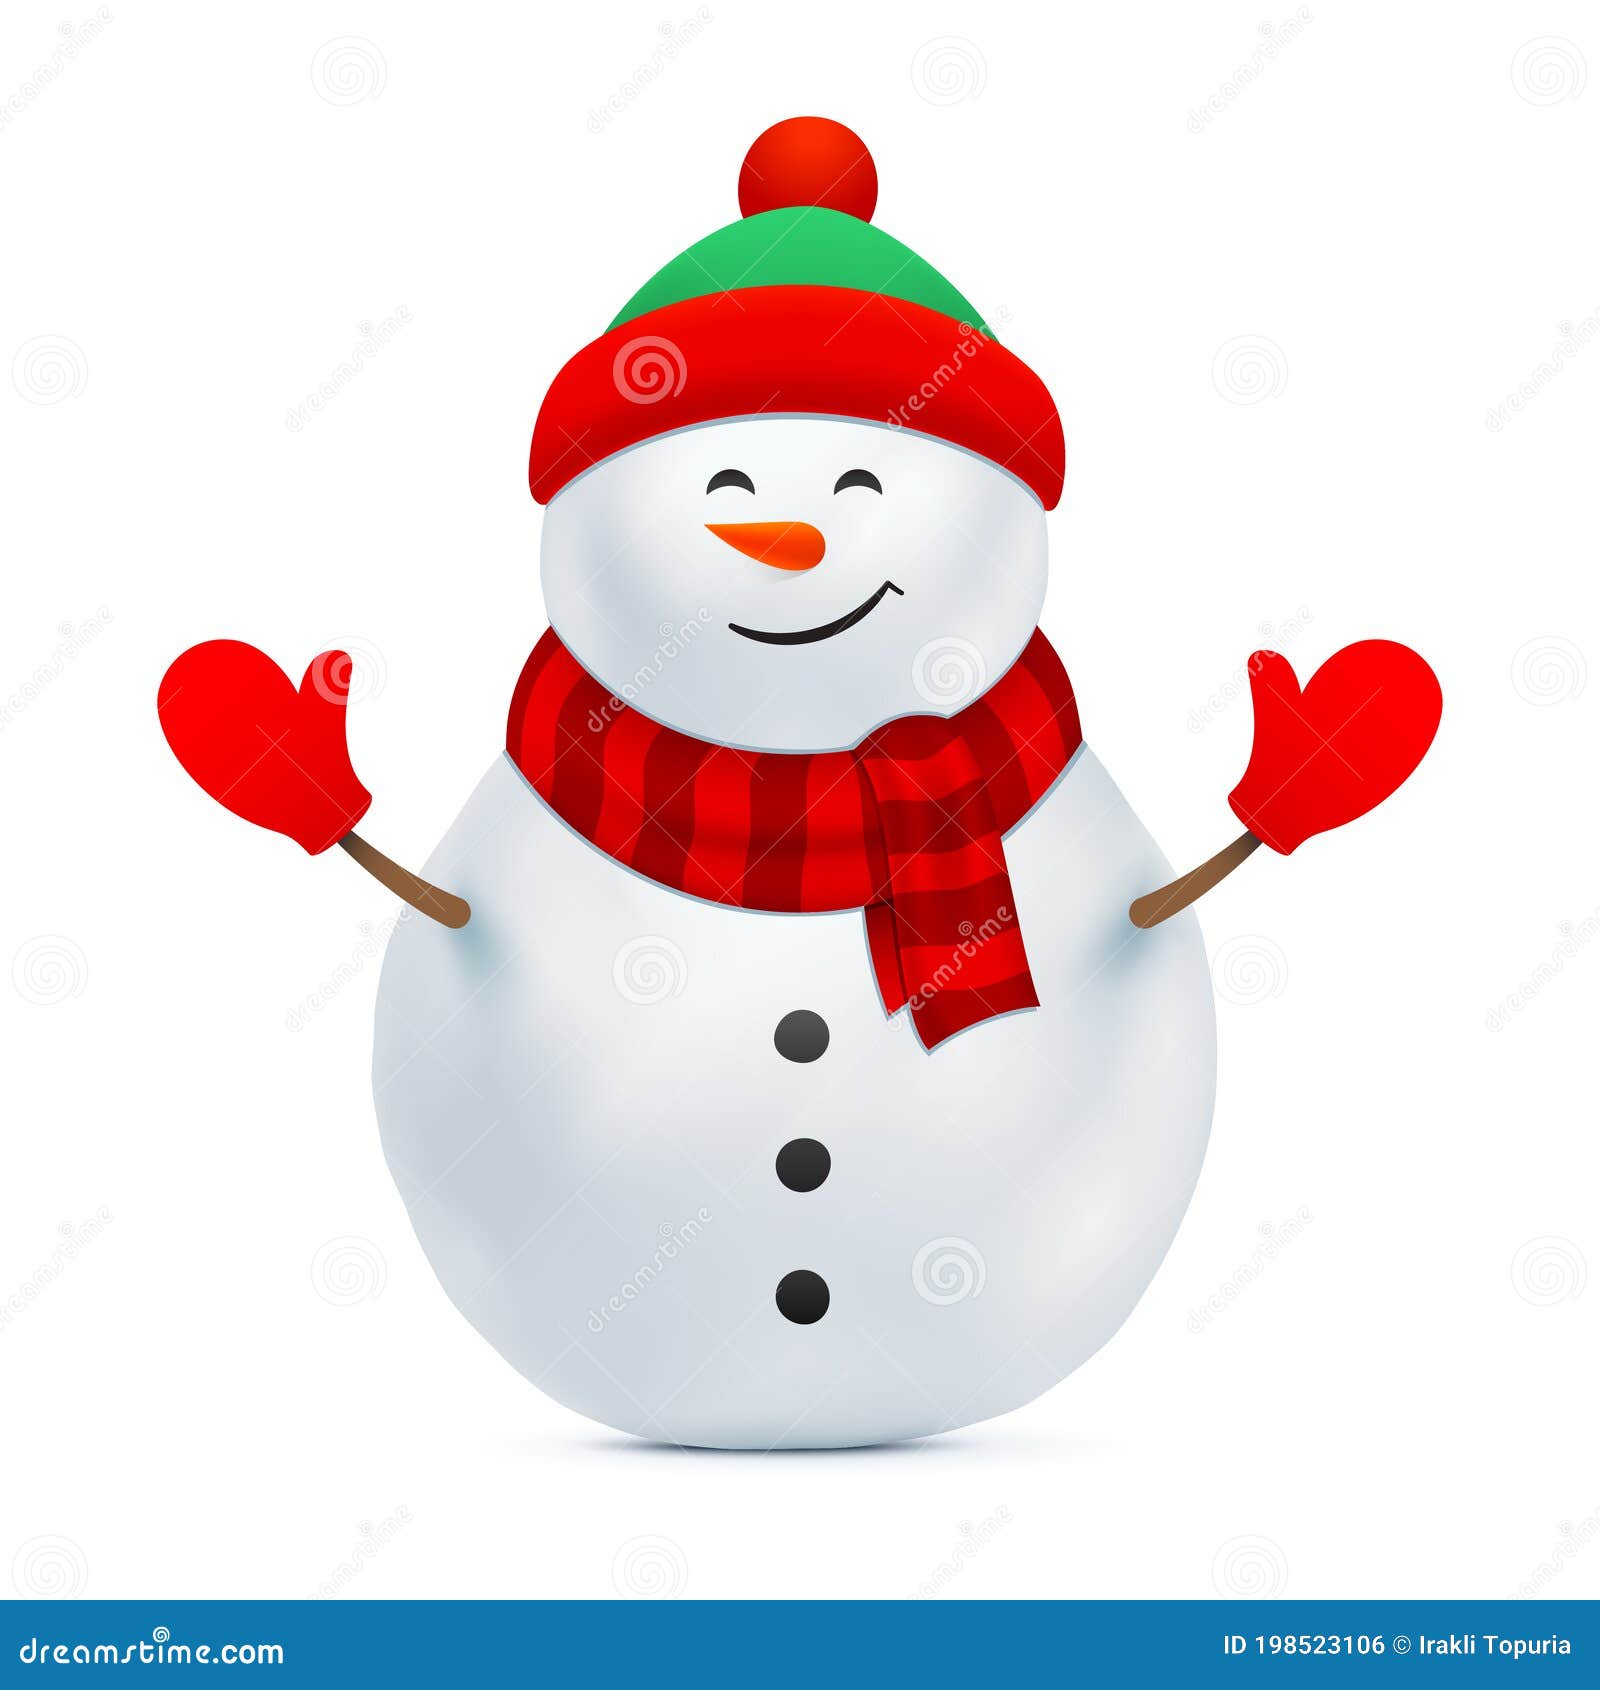 Muñeco De Nieve Con Sombrero De Abeja Y Guantes Rojos. Ilustración